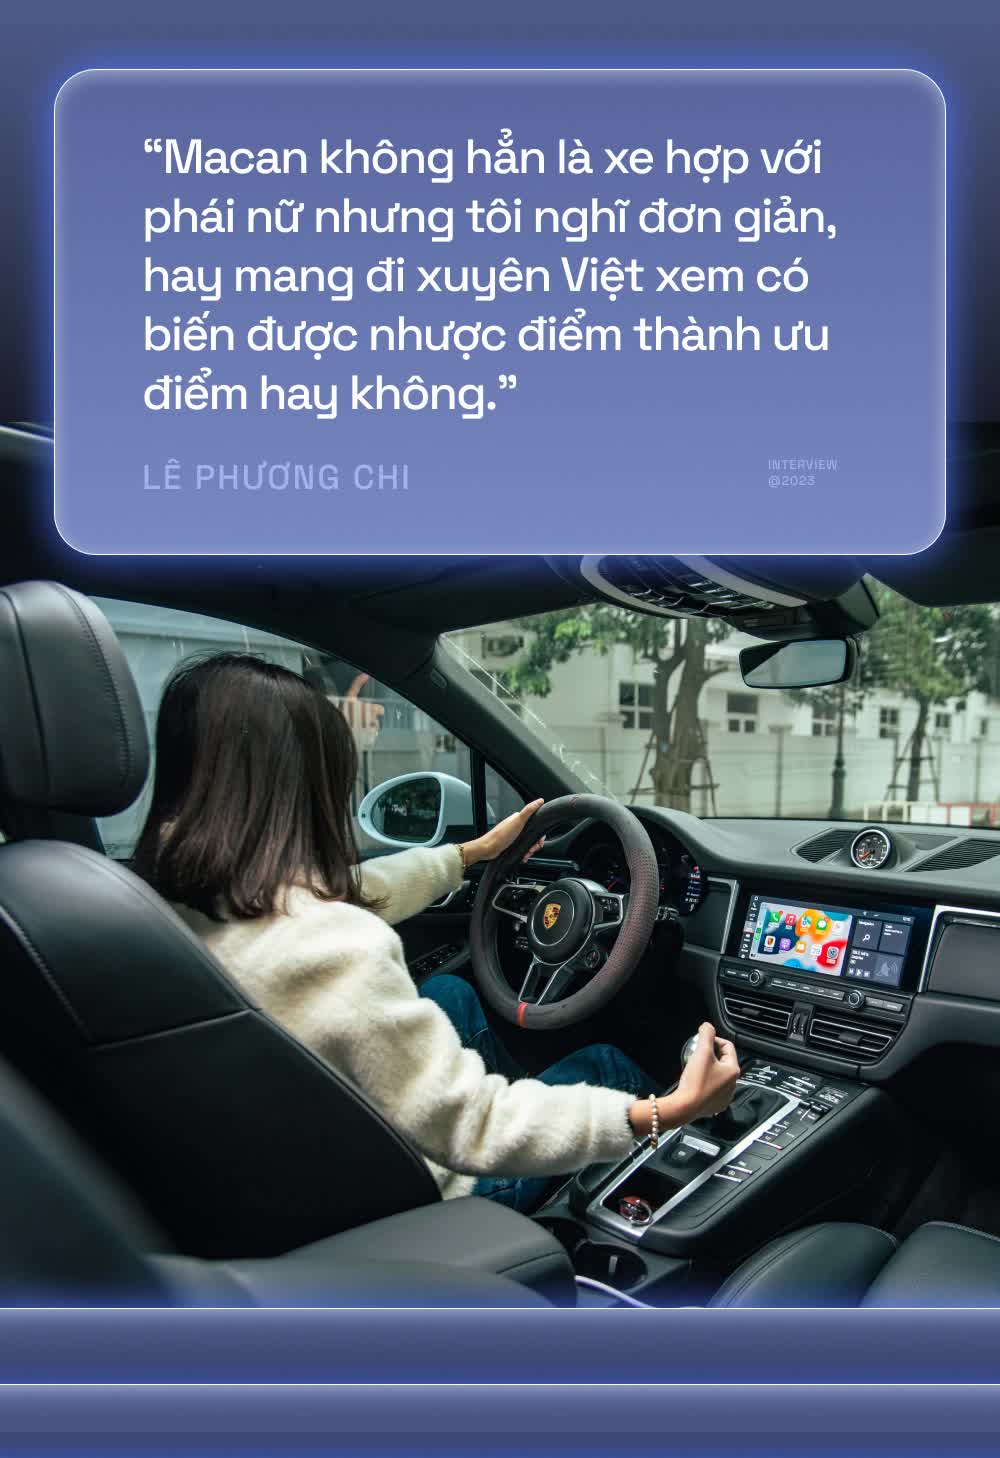 Gia đình 9X Hà Thành lái Macan xuyên Việt: ‘Mua Porsche mà chỉ loanh quanh Hà Nội thì rất chán’ - ảnh 3